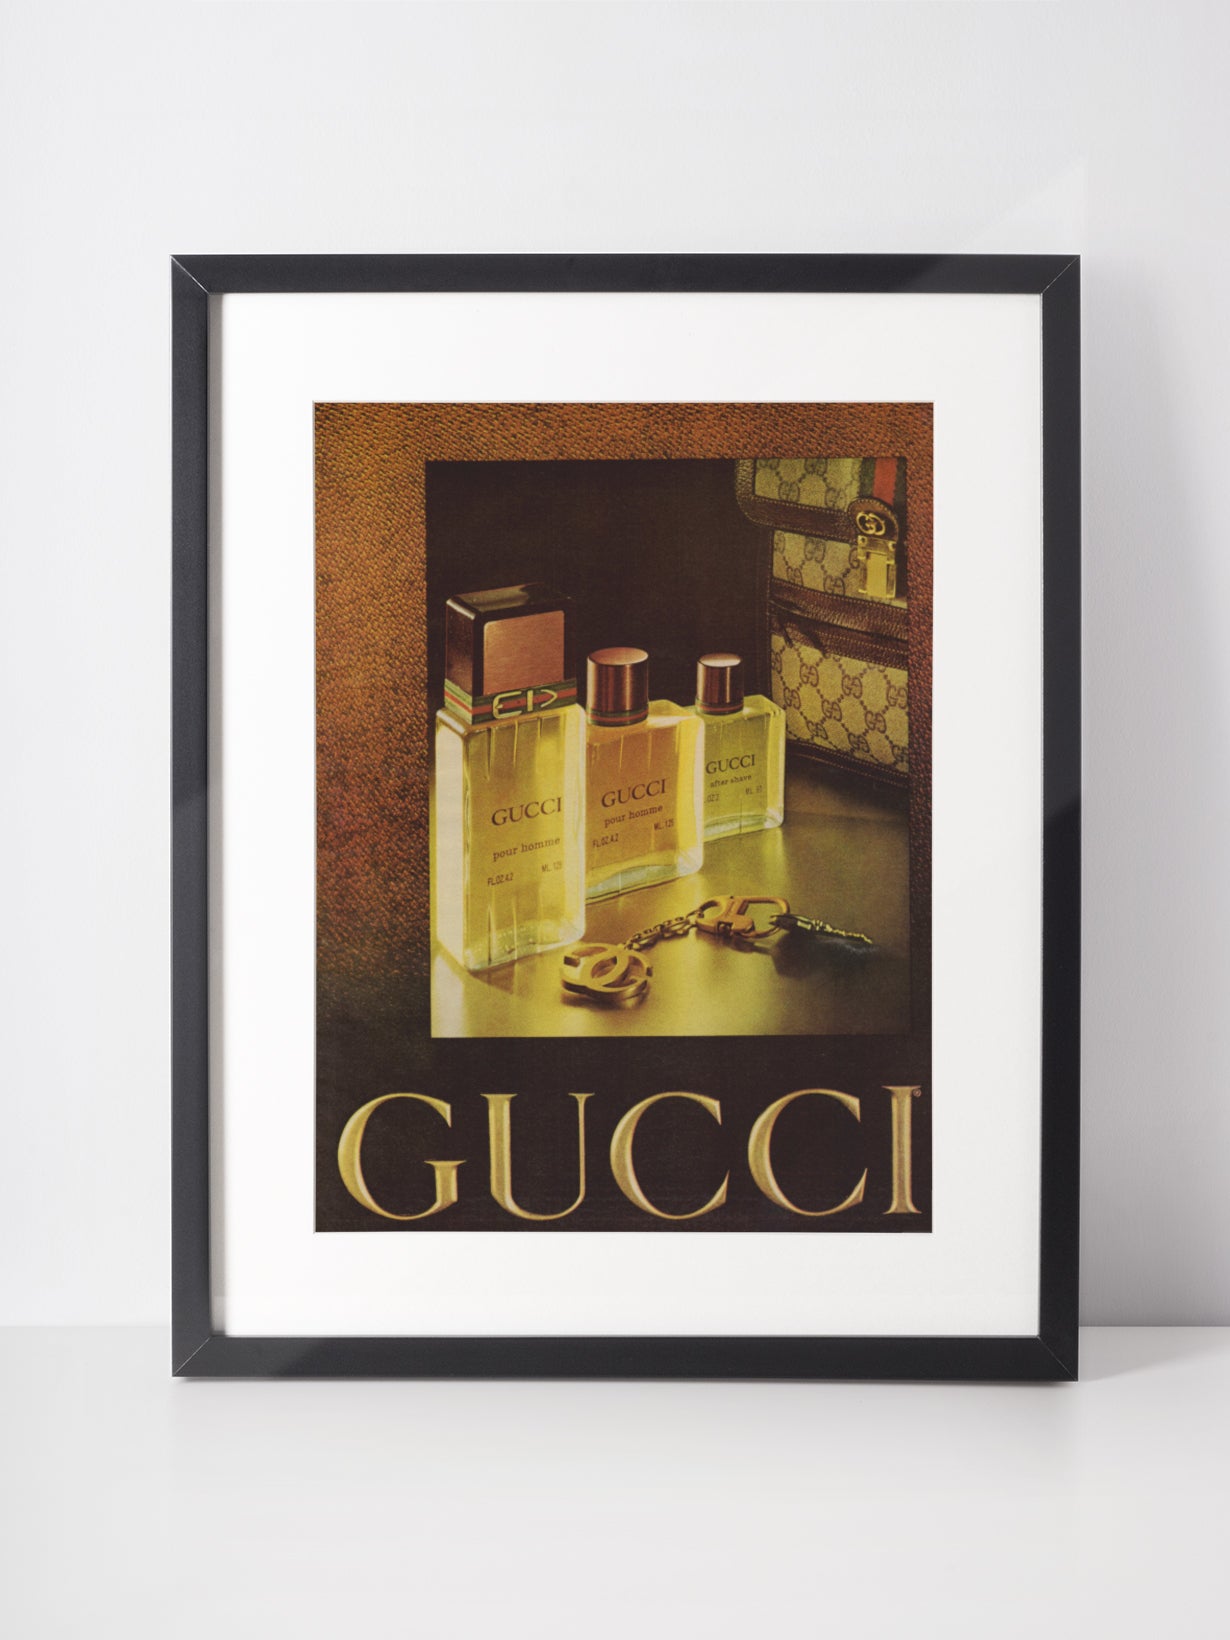 GUCCI 1978 Pour Homme Vintage Advertisement Perfume Scent Fragrance